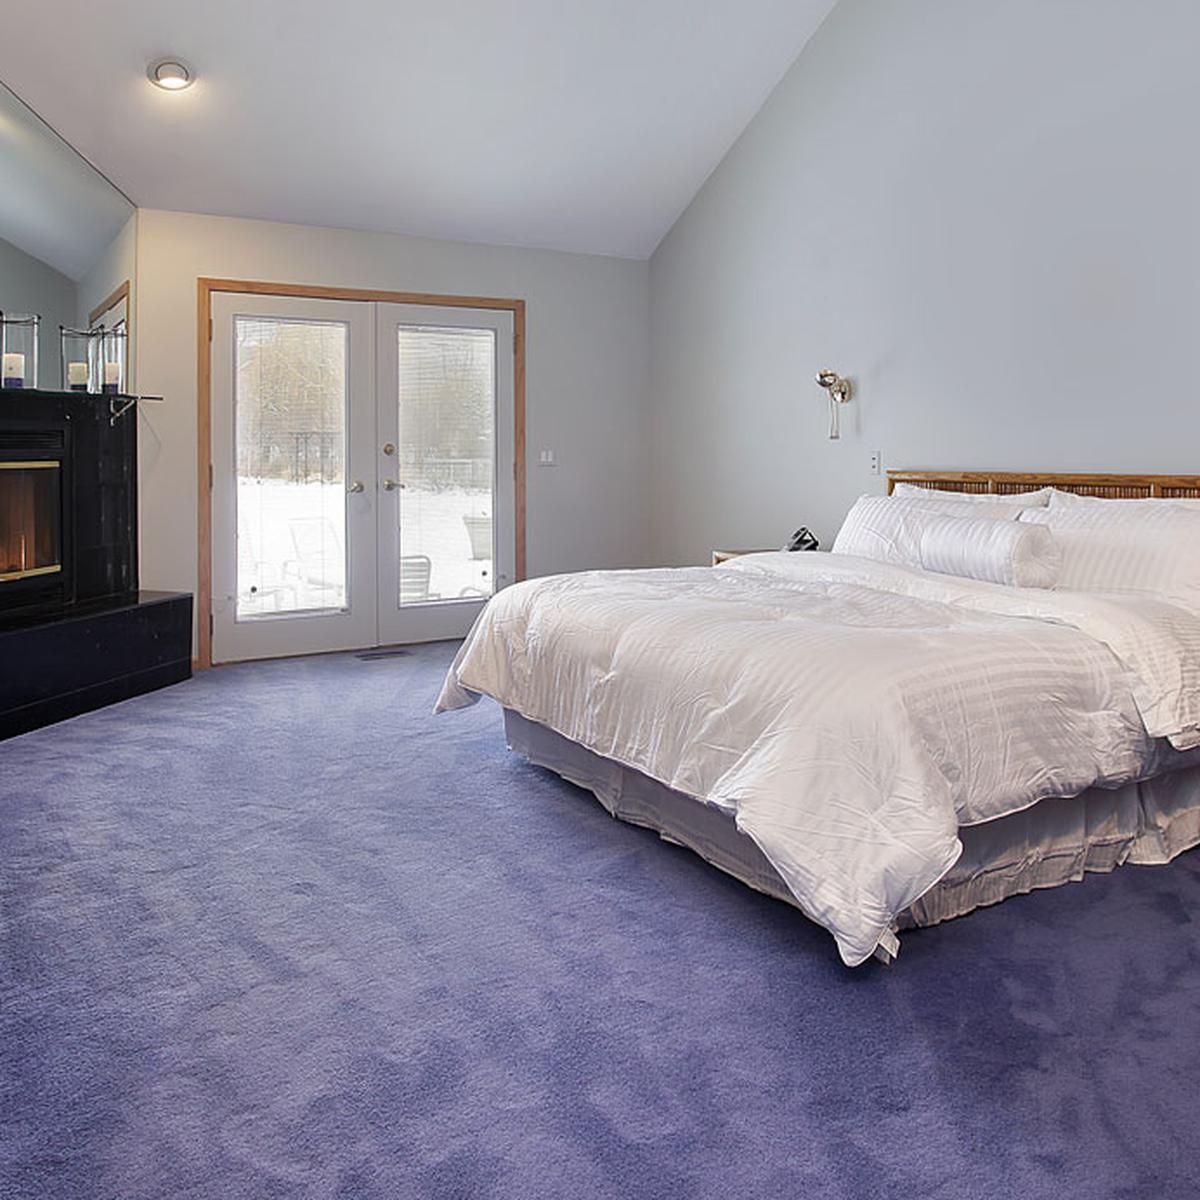 Estas 5 alfombras conseguirán que tu dormitorio parezca otro